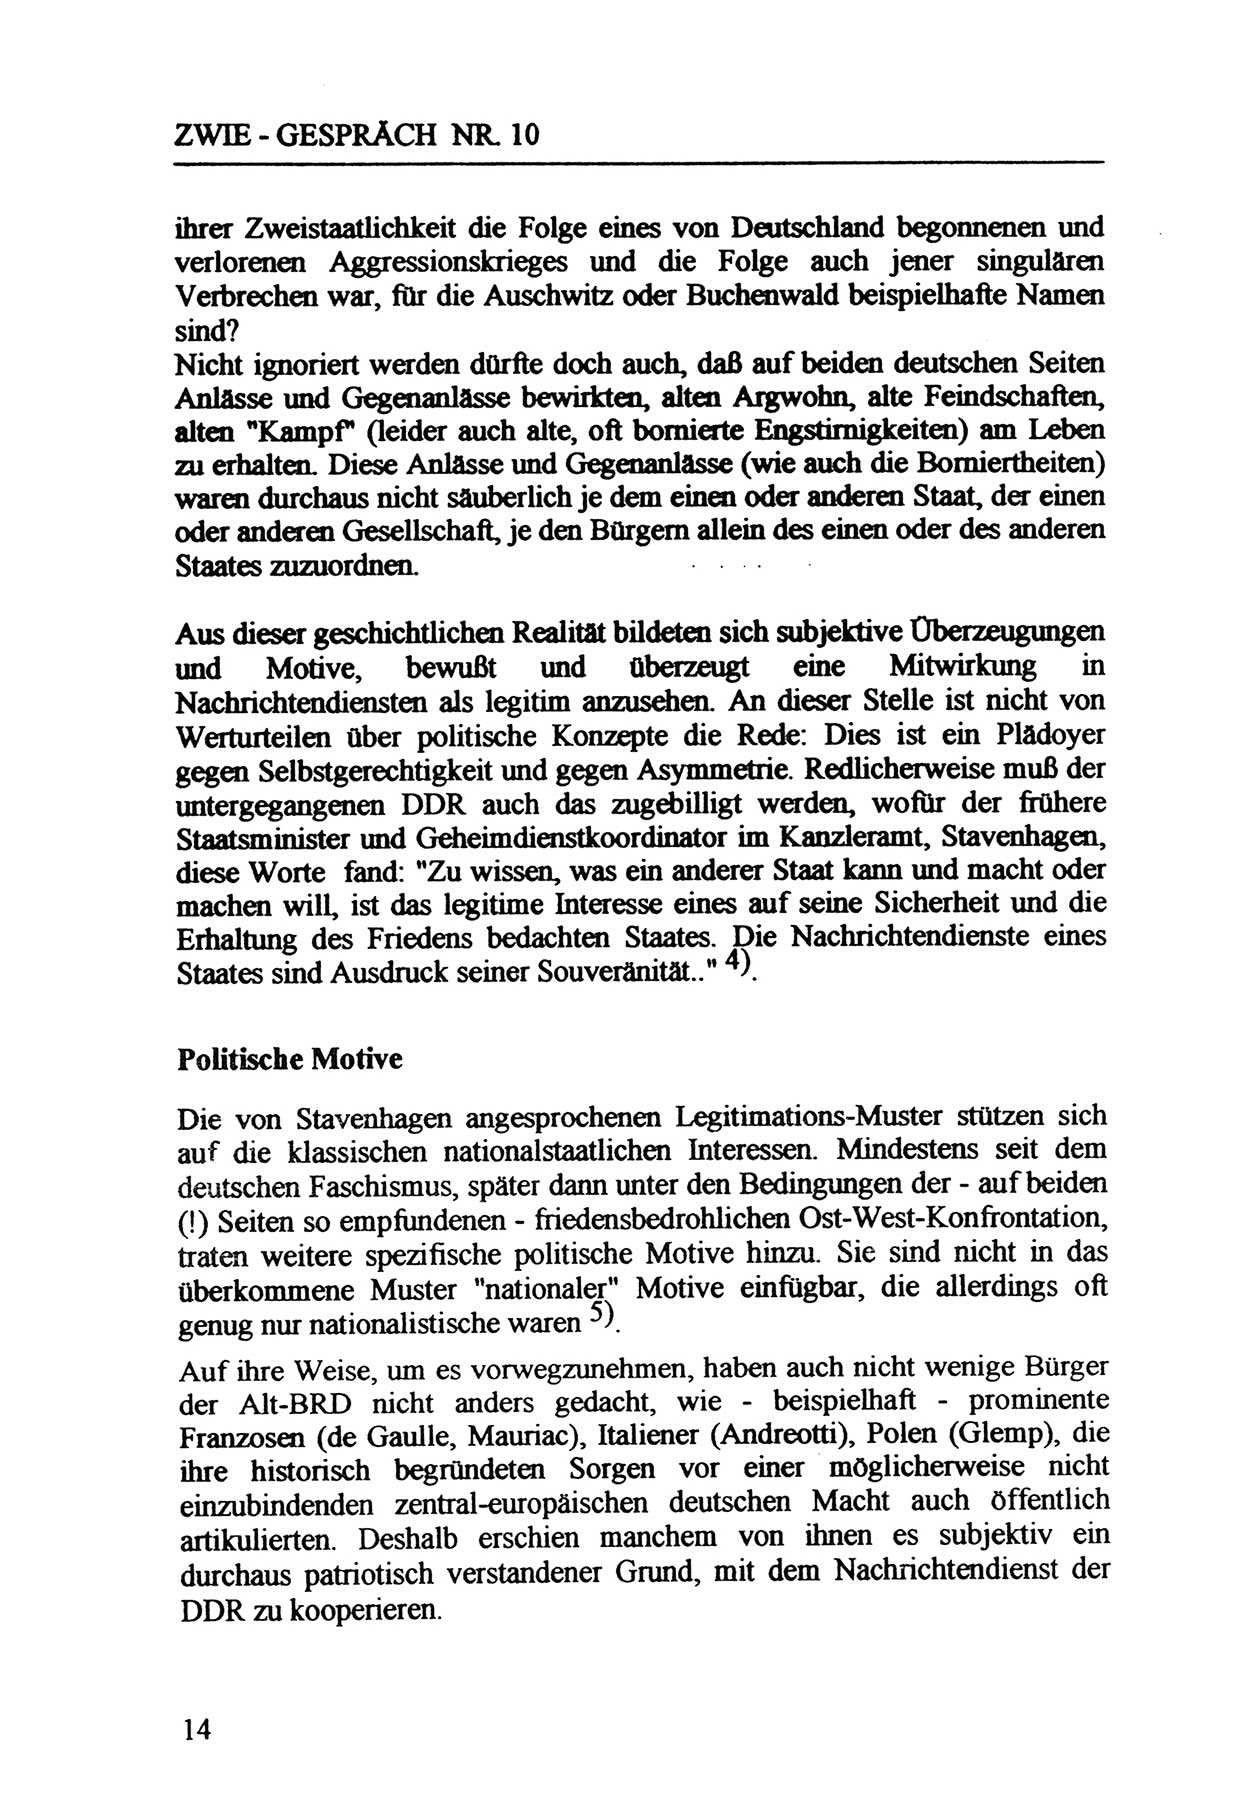 Zwie-Gespräch, Beiträge zur Aufarbeitung der Staatssicherheits-Vergangenheit [Deutsche Demokratische Republik (DDR)], Ausgabe Nr. 10, Berlin 1992, Seite 14 (Zwie-Gespr. Ausg. 10 1992, S. 14)